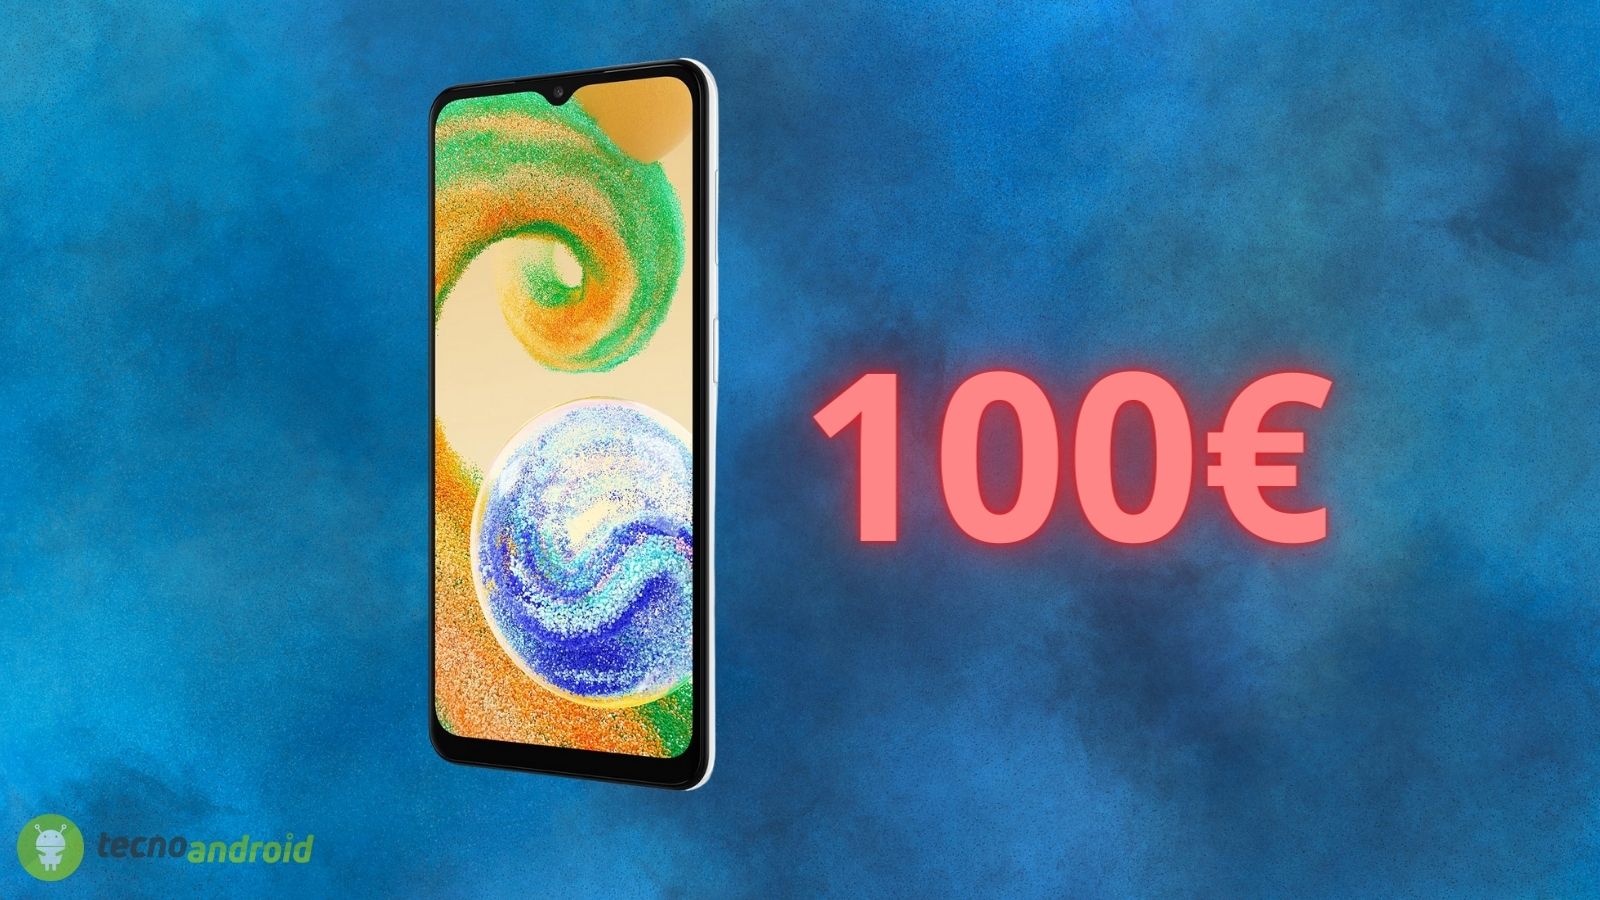 Samsung: lo smartphone in offerta a SOLI 100€